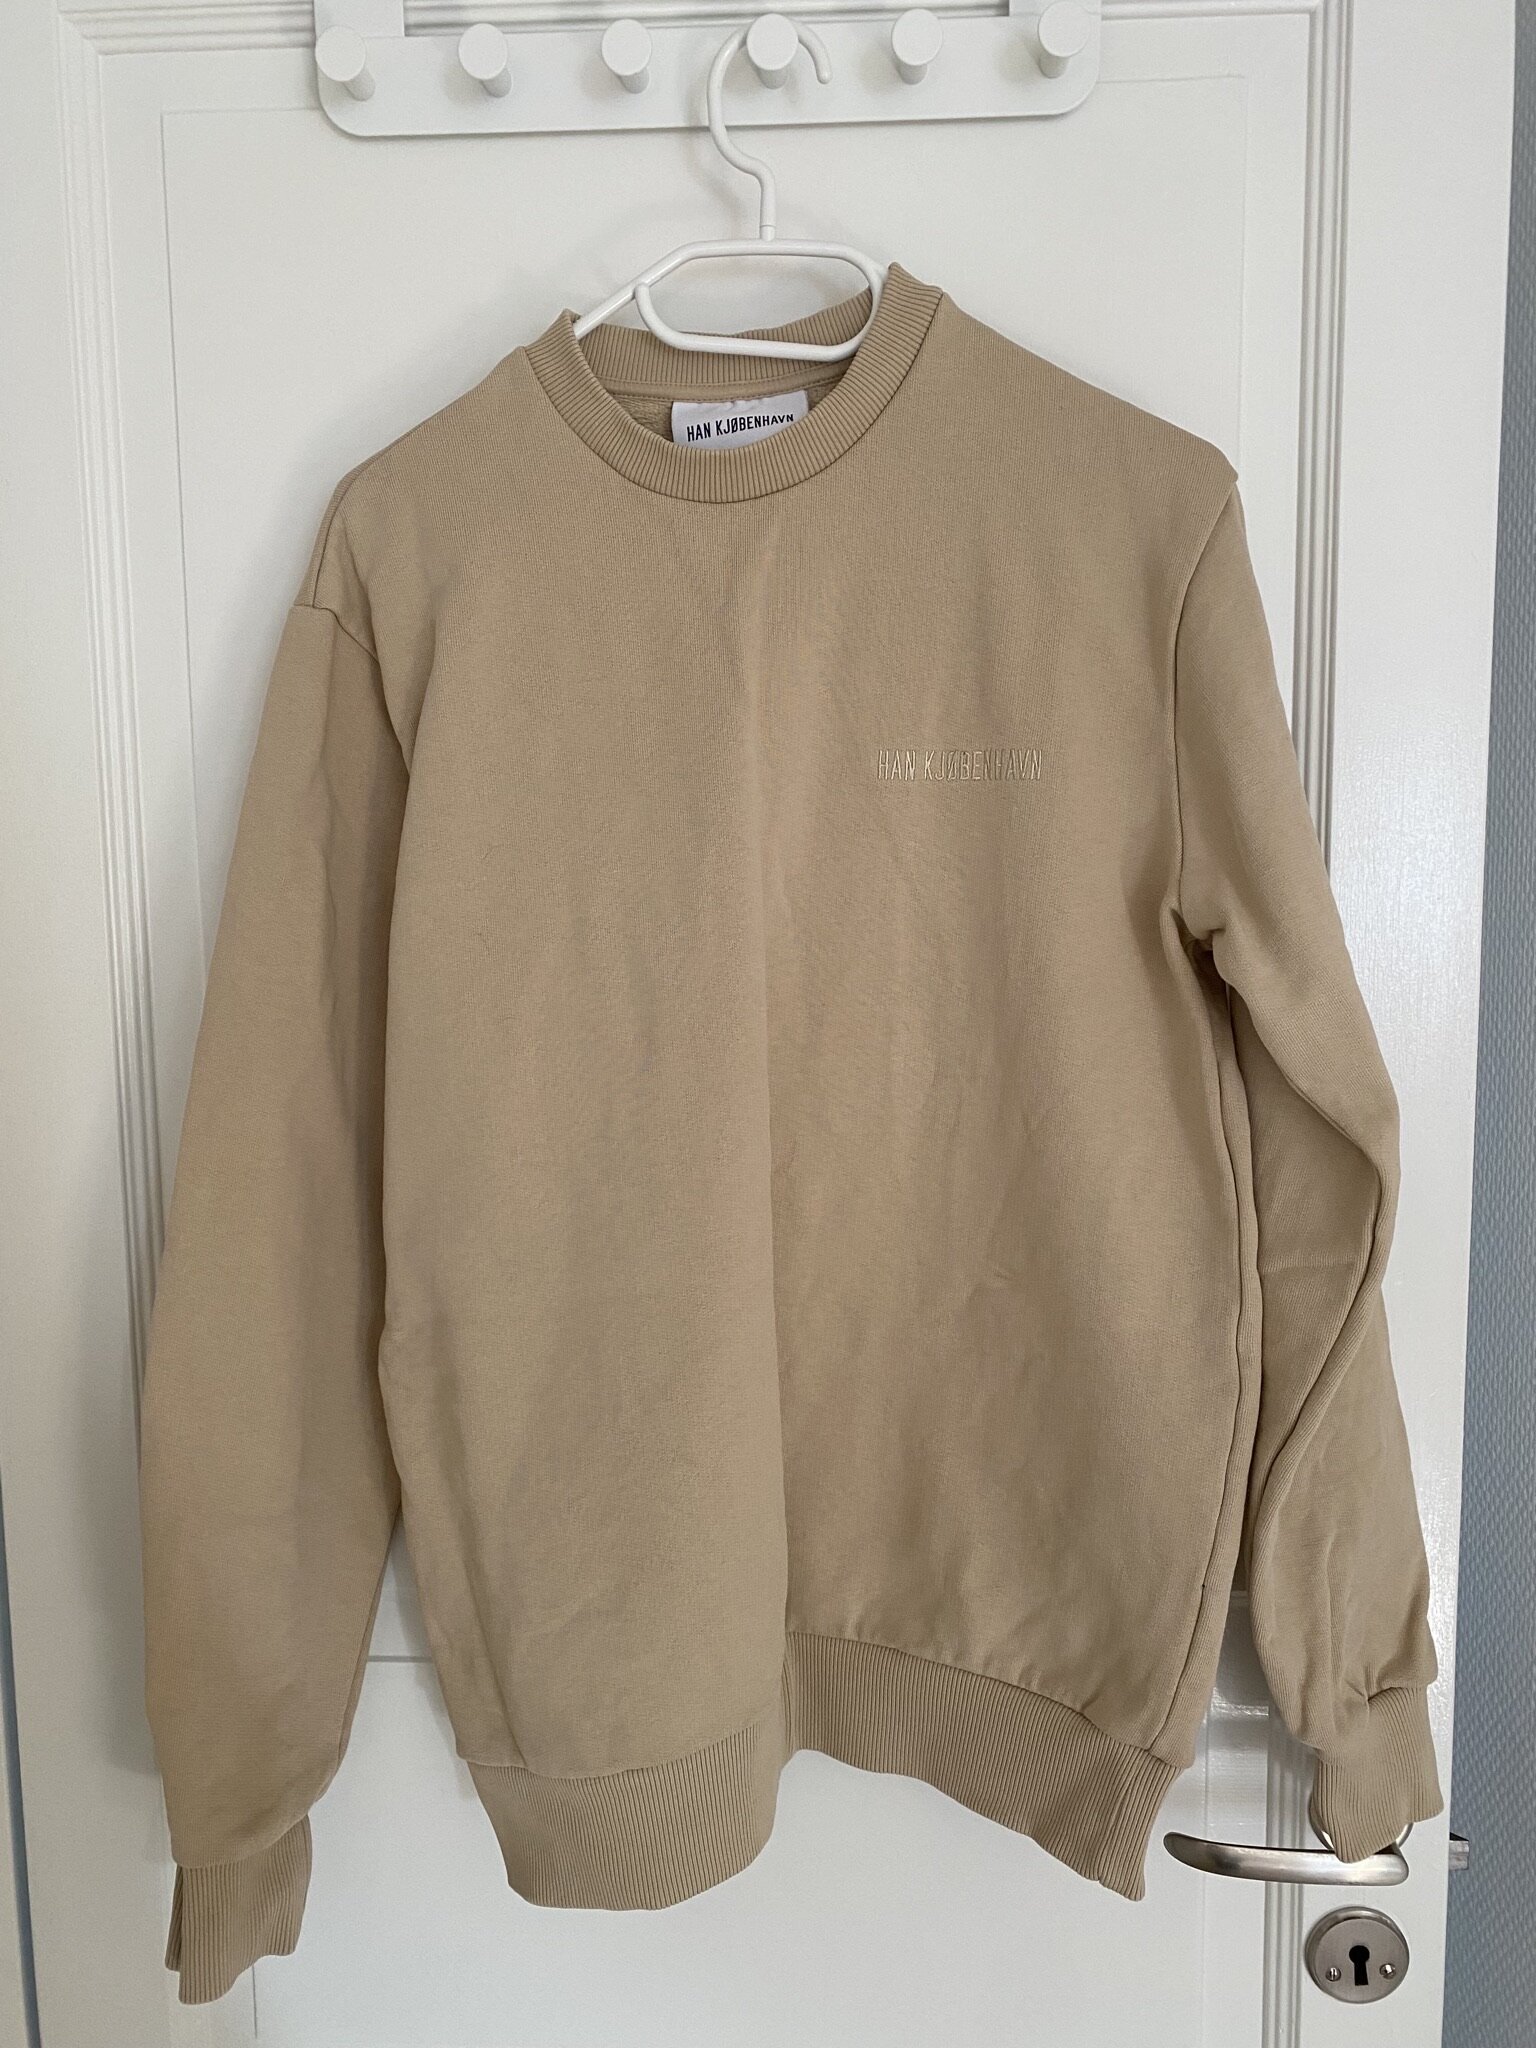 HAN Kjøbenhavn sweater, 480 kr. 